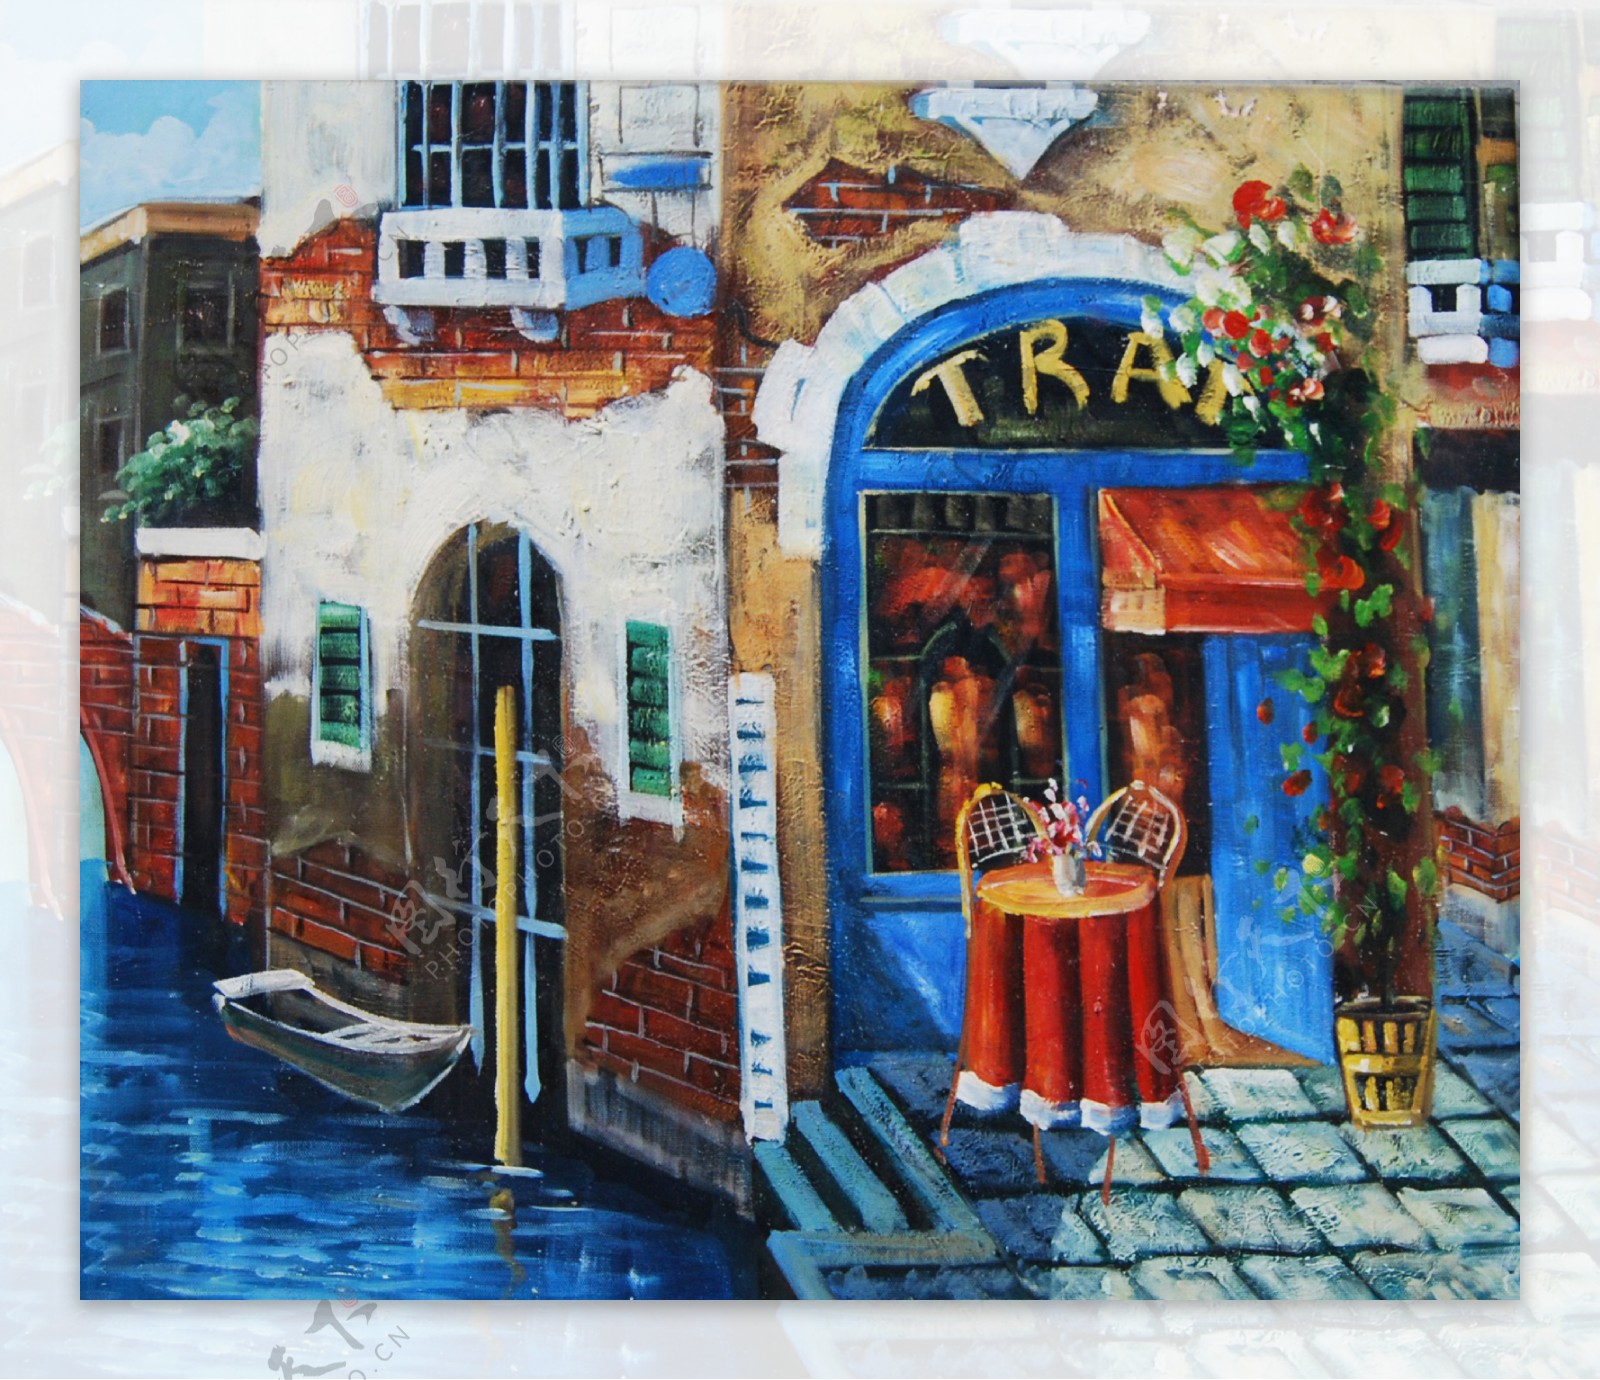 威尼斯小镇商铺风景油画